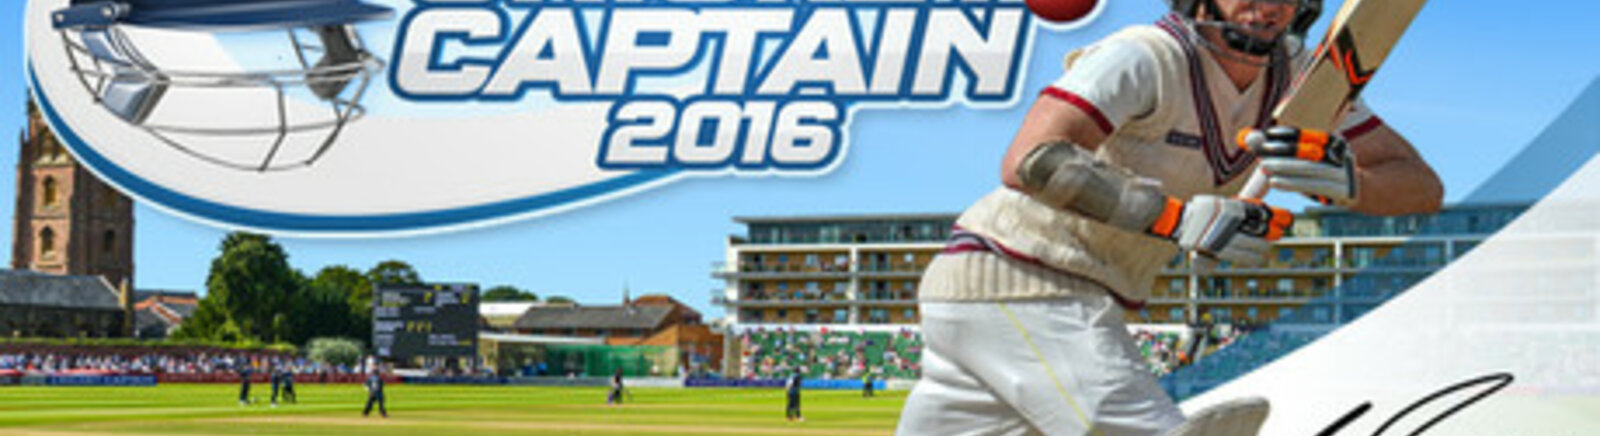 Дата выхода Cricket Captain 2016  на PC, iOS и Android в России и во всем мире